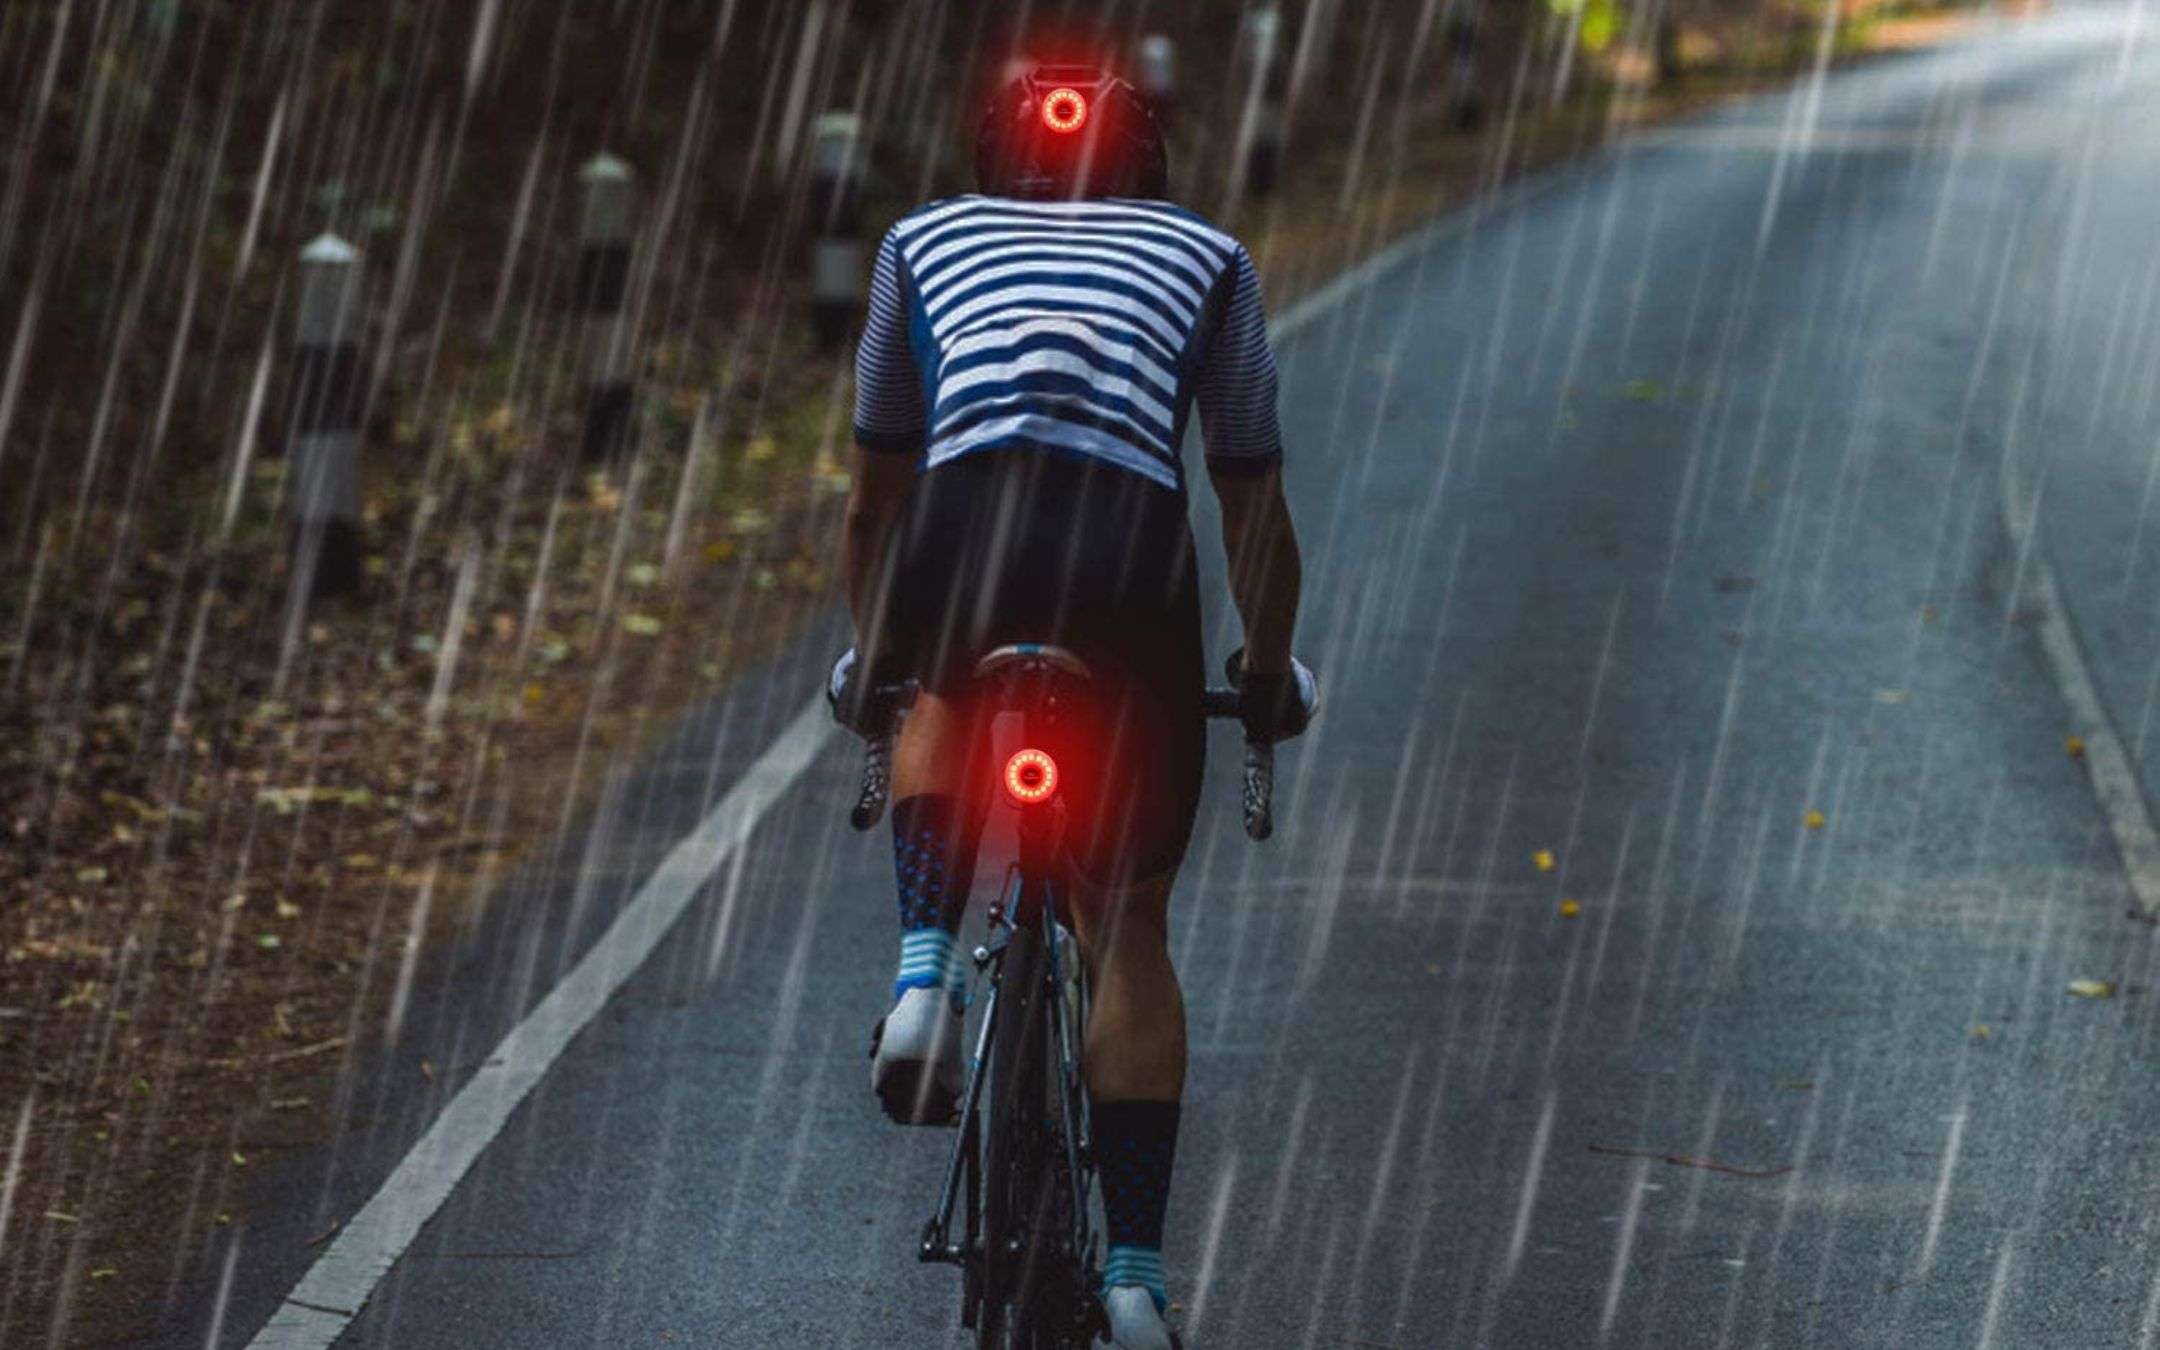 Luci bicicletta LED: i migliori modelli per viaggiare sicuri